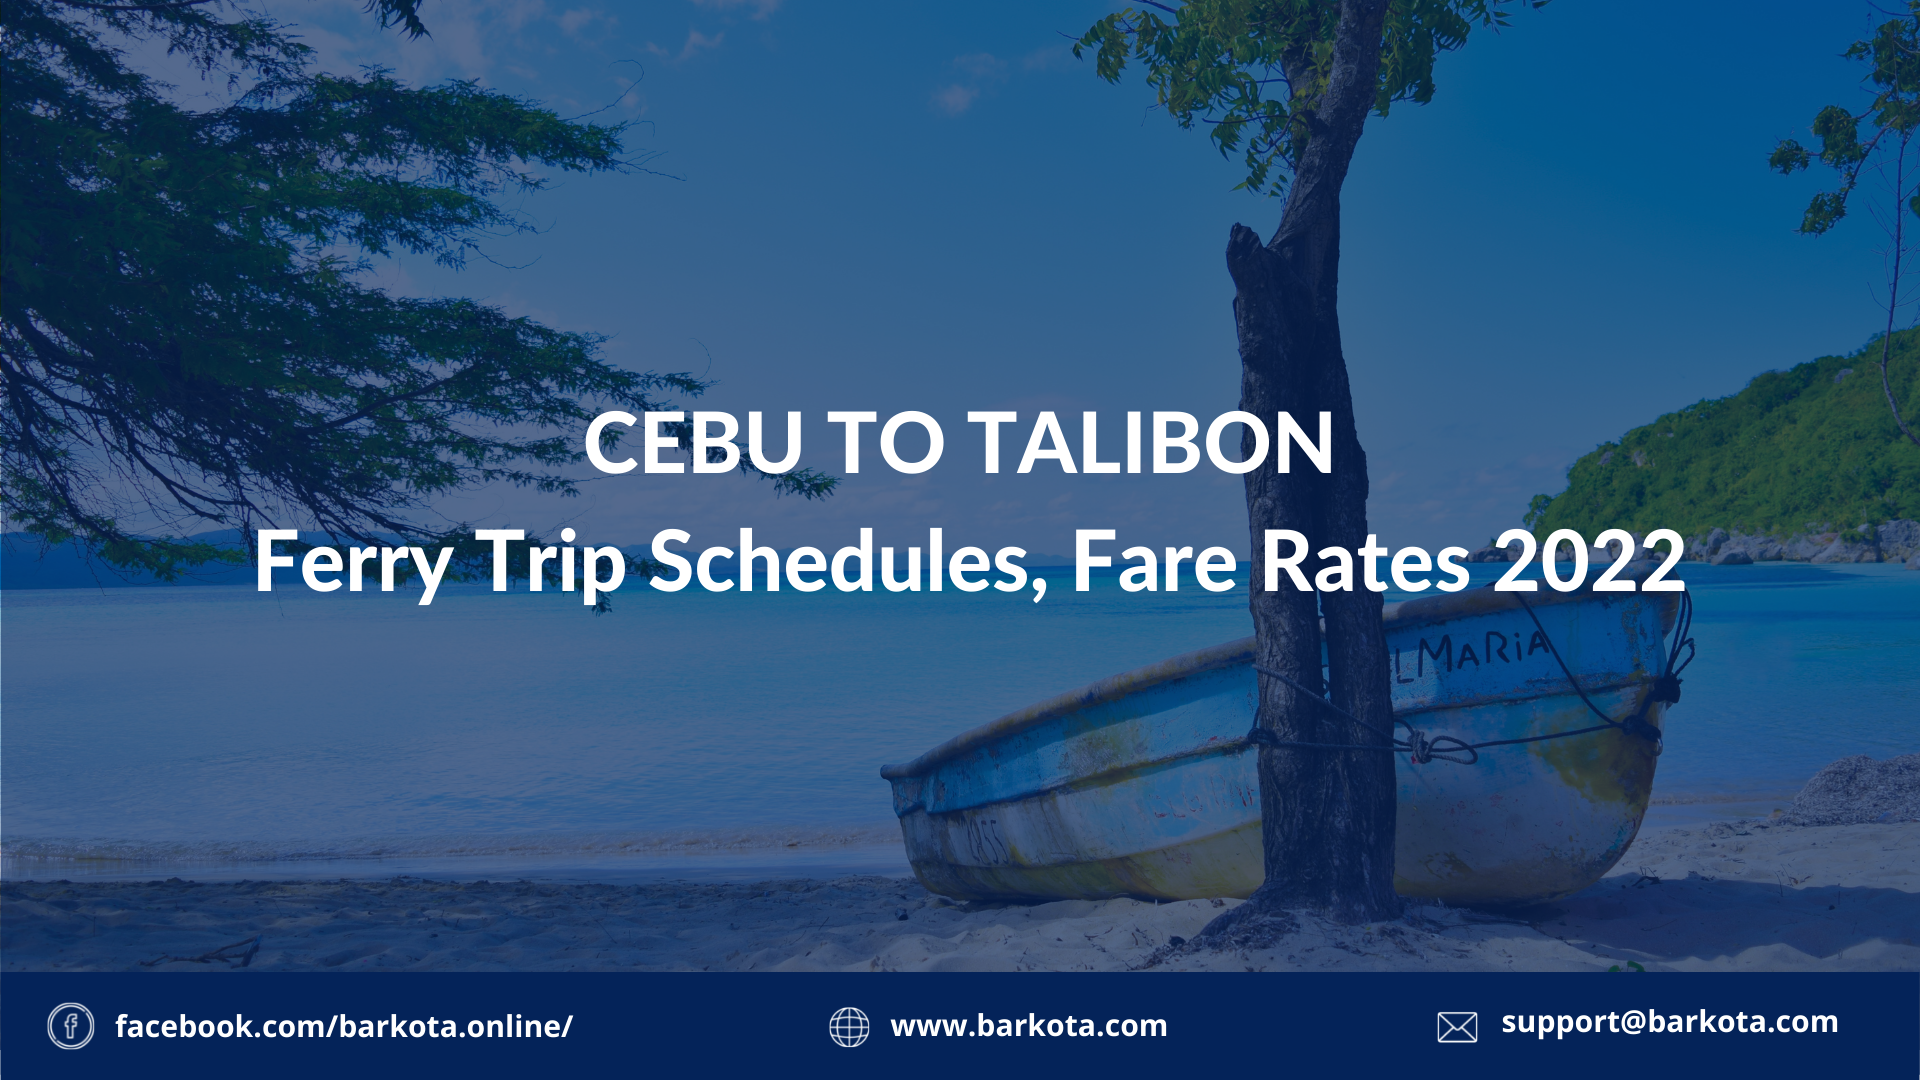 Cebu to Talibon Ferry Schedule